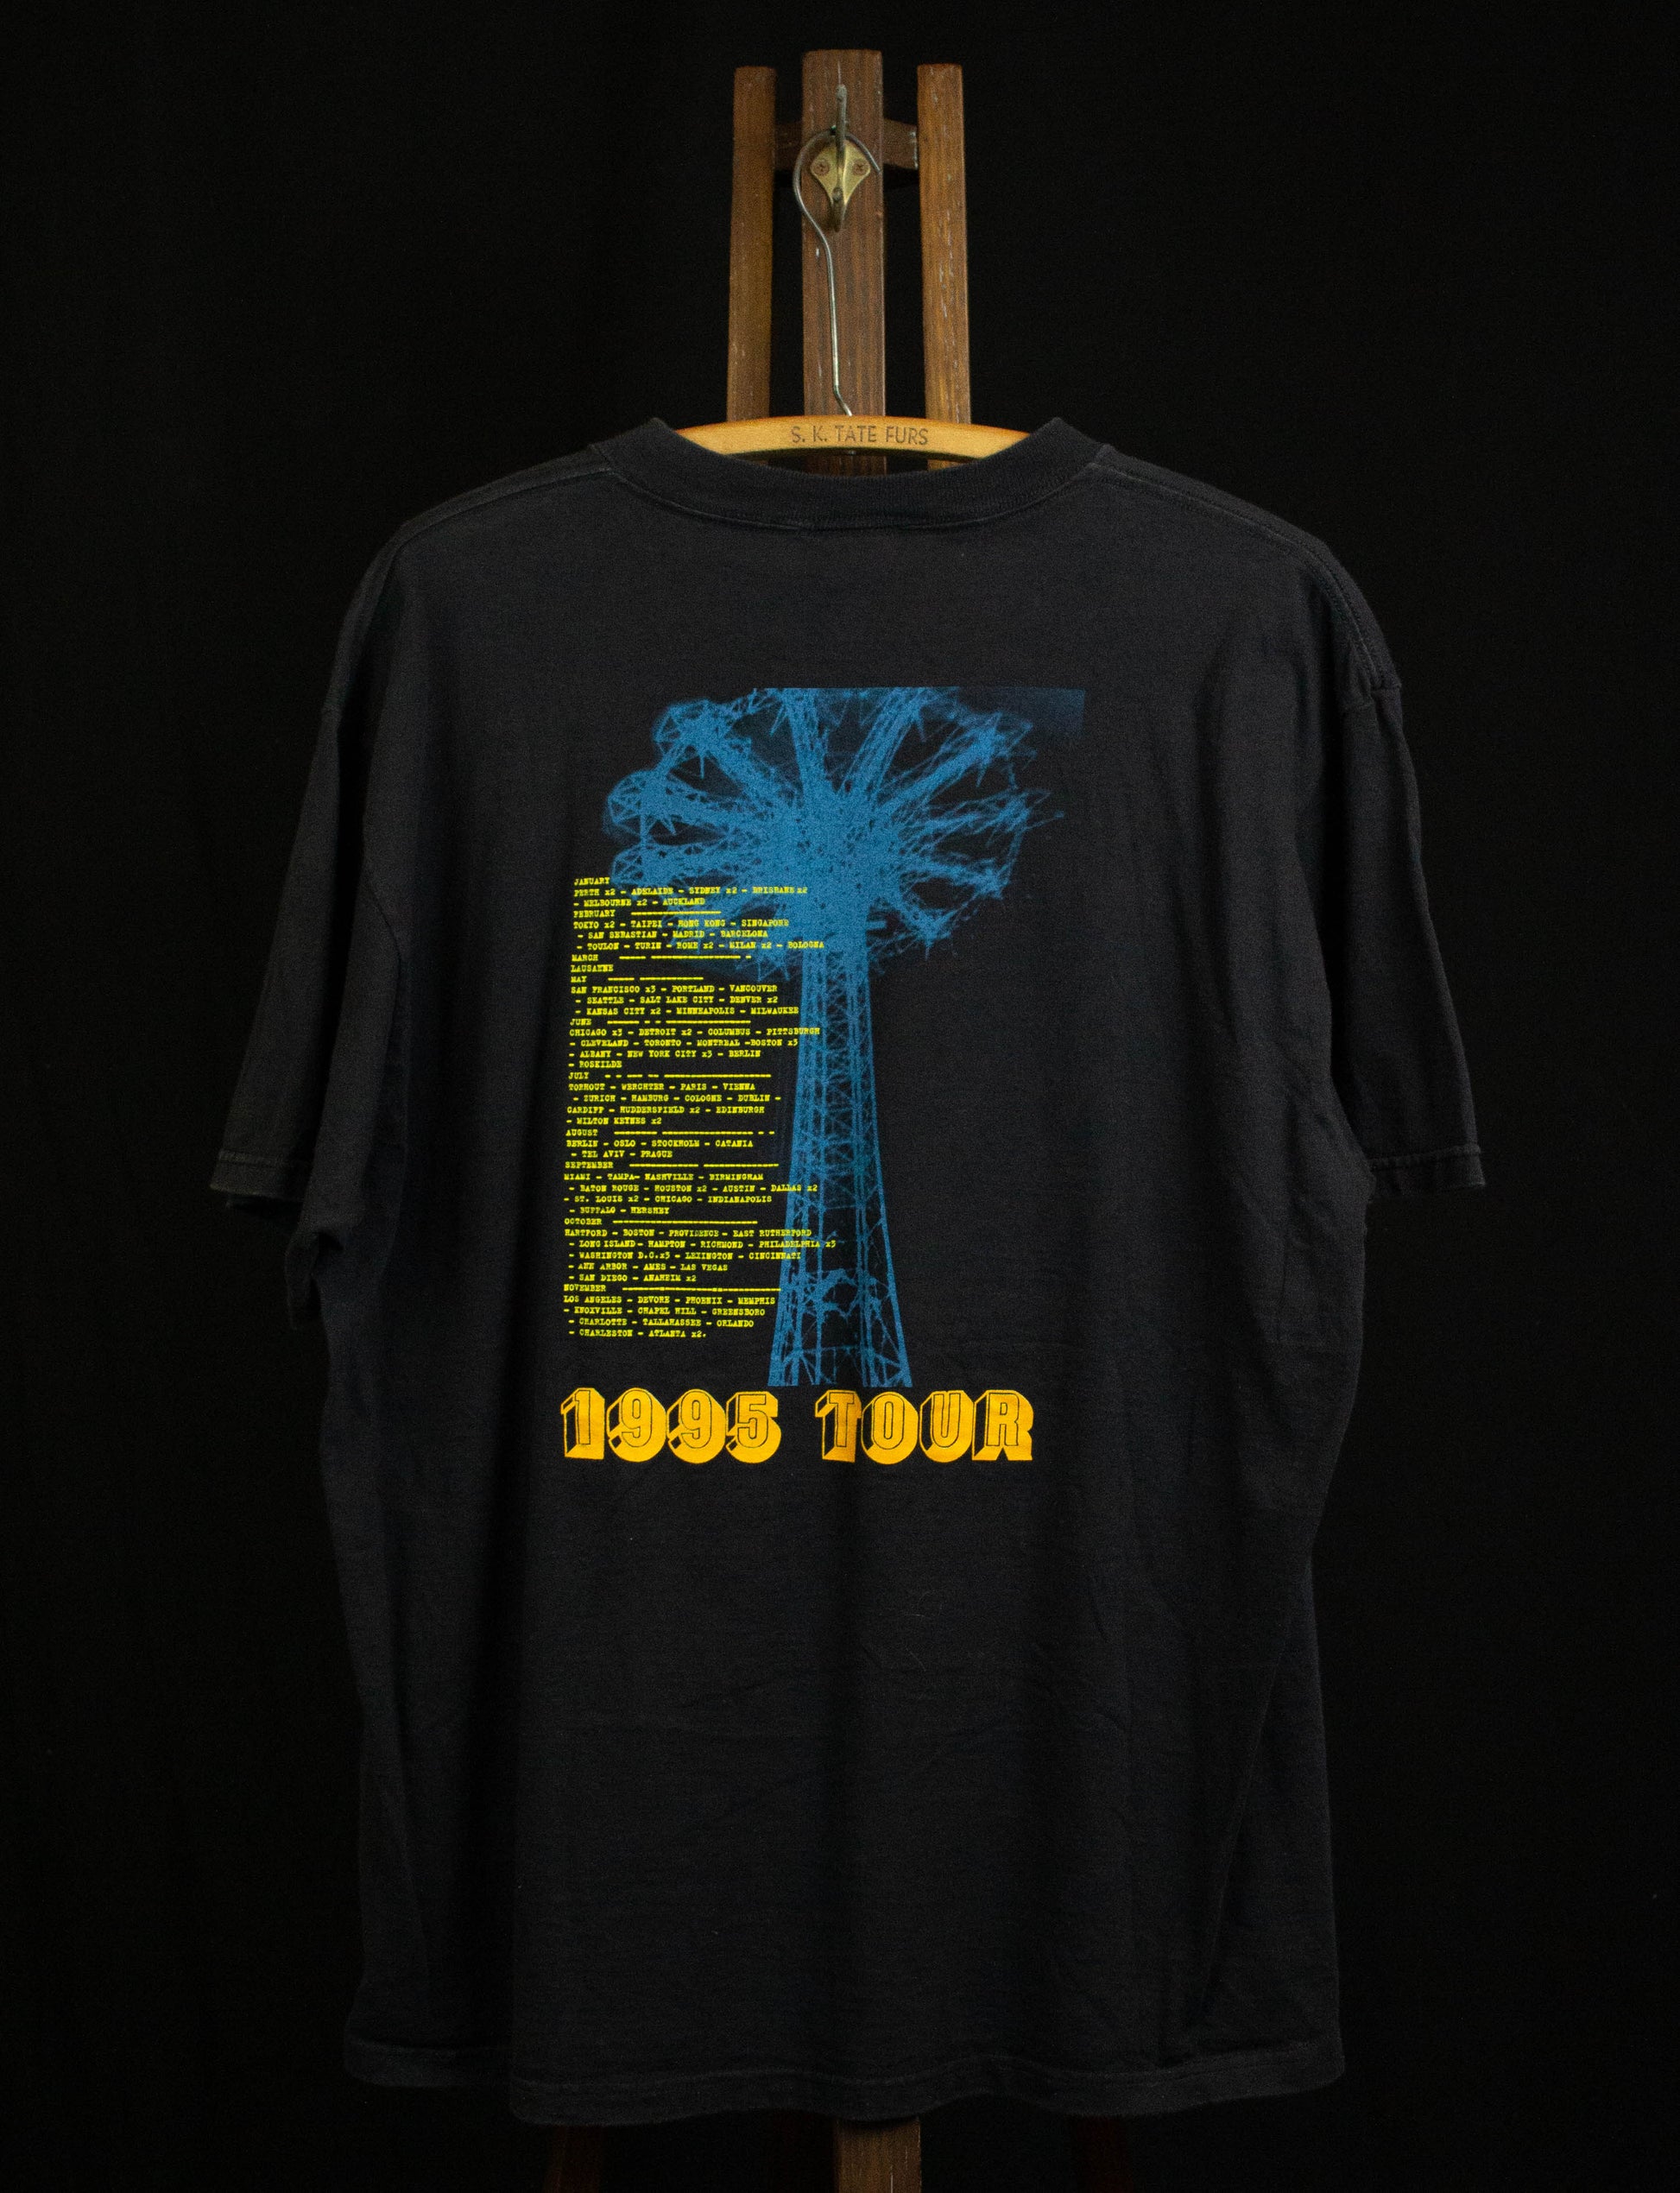 Vintage REM 1995 Tour Concert T Shirt Black XL